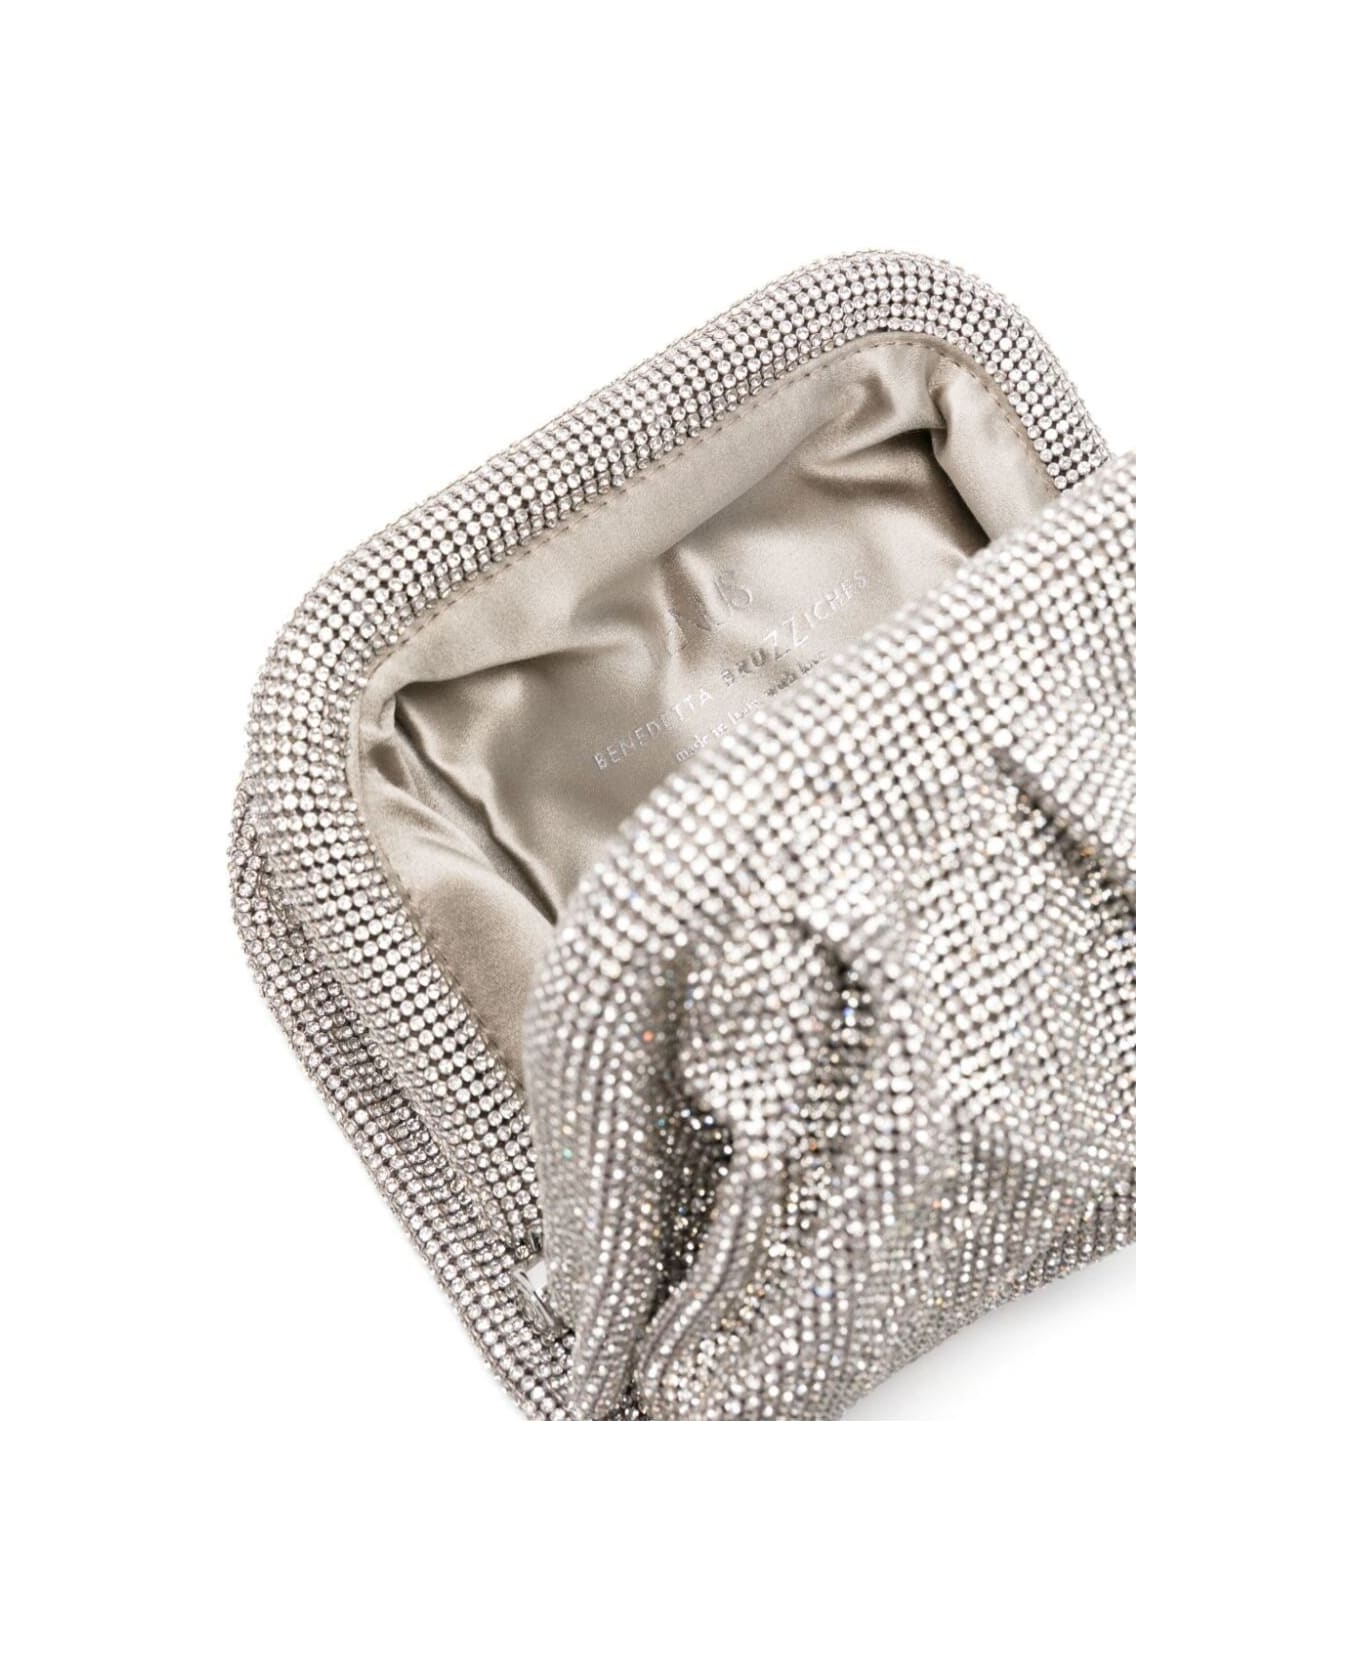 Benedetta Bruzziches 'venus La Petite' Silver Clutch Bag In Fabric With Allover Crystals Woman - Metallic